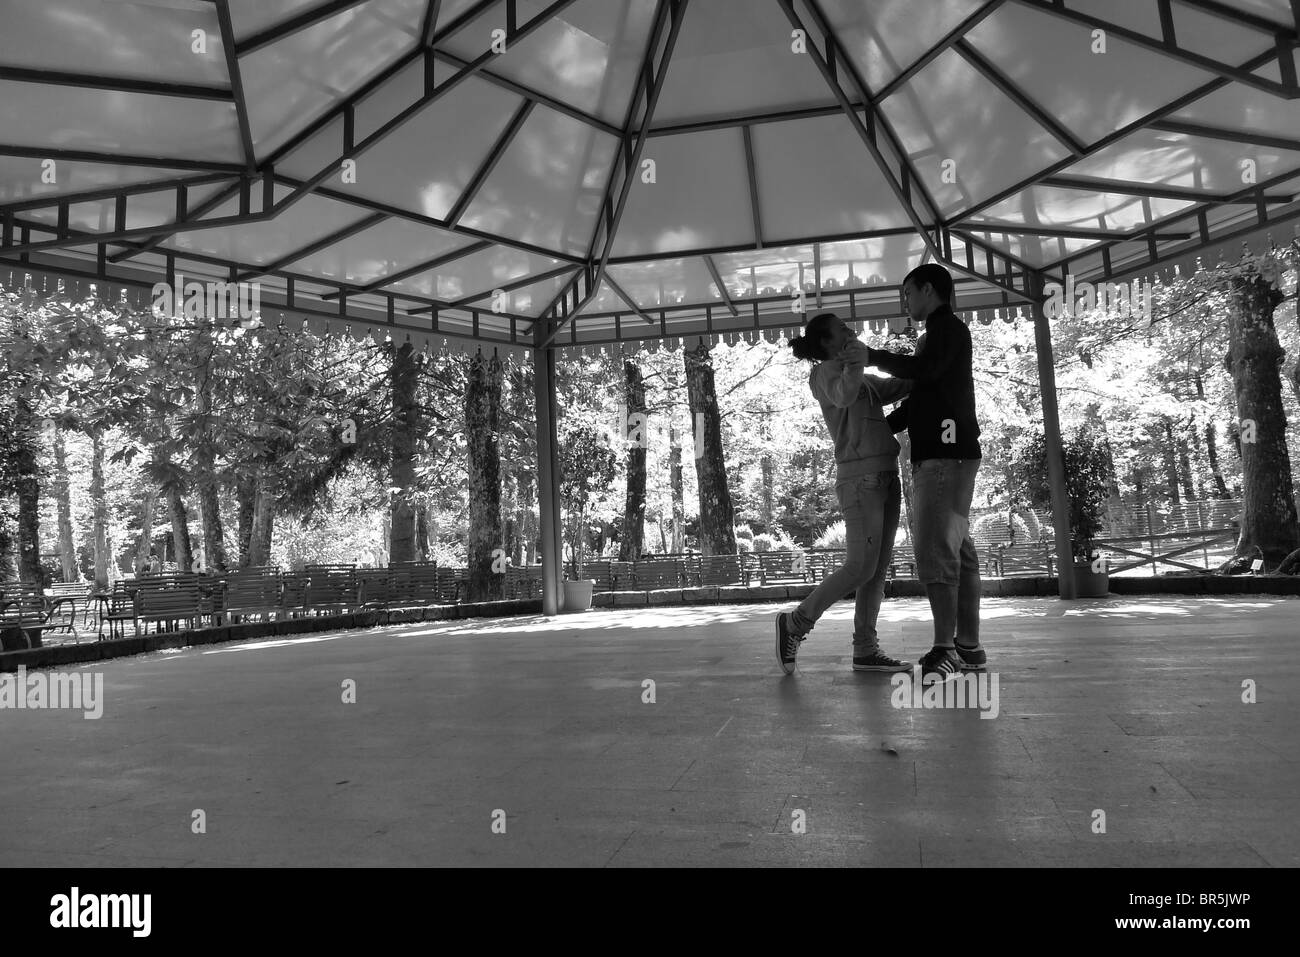 Paar von jungen und Mädchen tanzen unter einem Pavillon, Stühle und Bäume, die sie umgibt. Breiten flachen Winkel Perspektive. Stockfoto